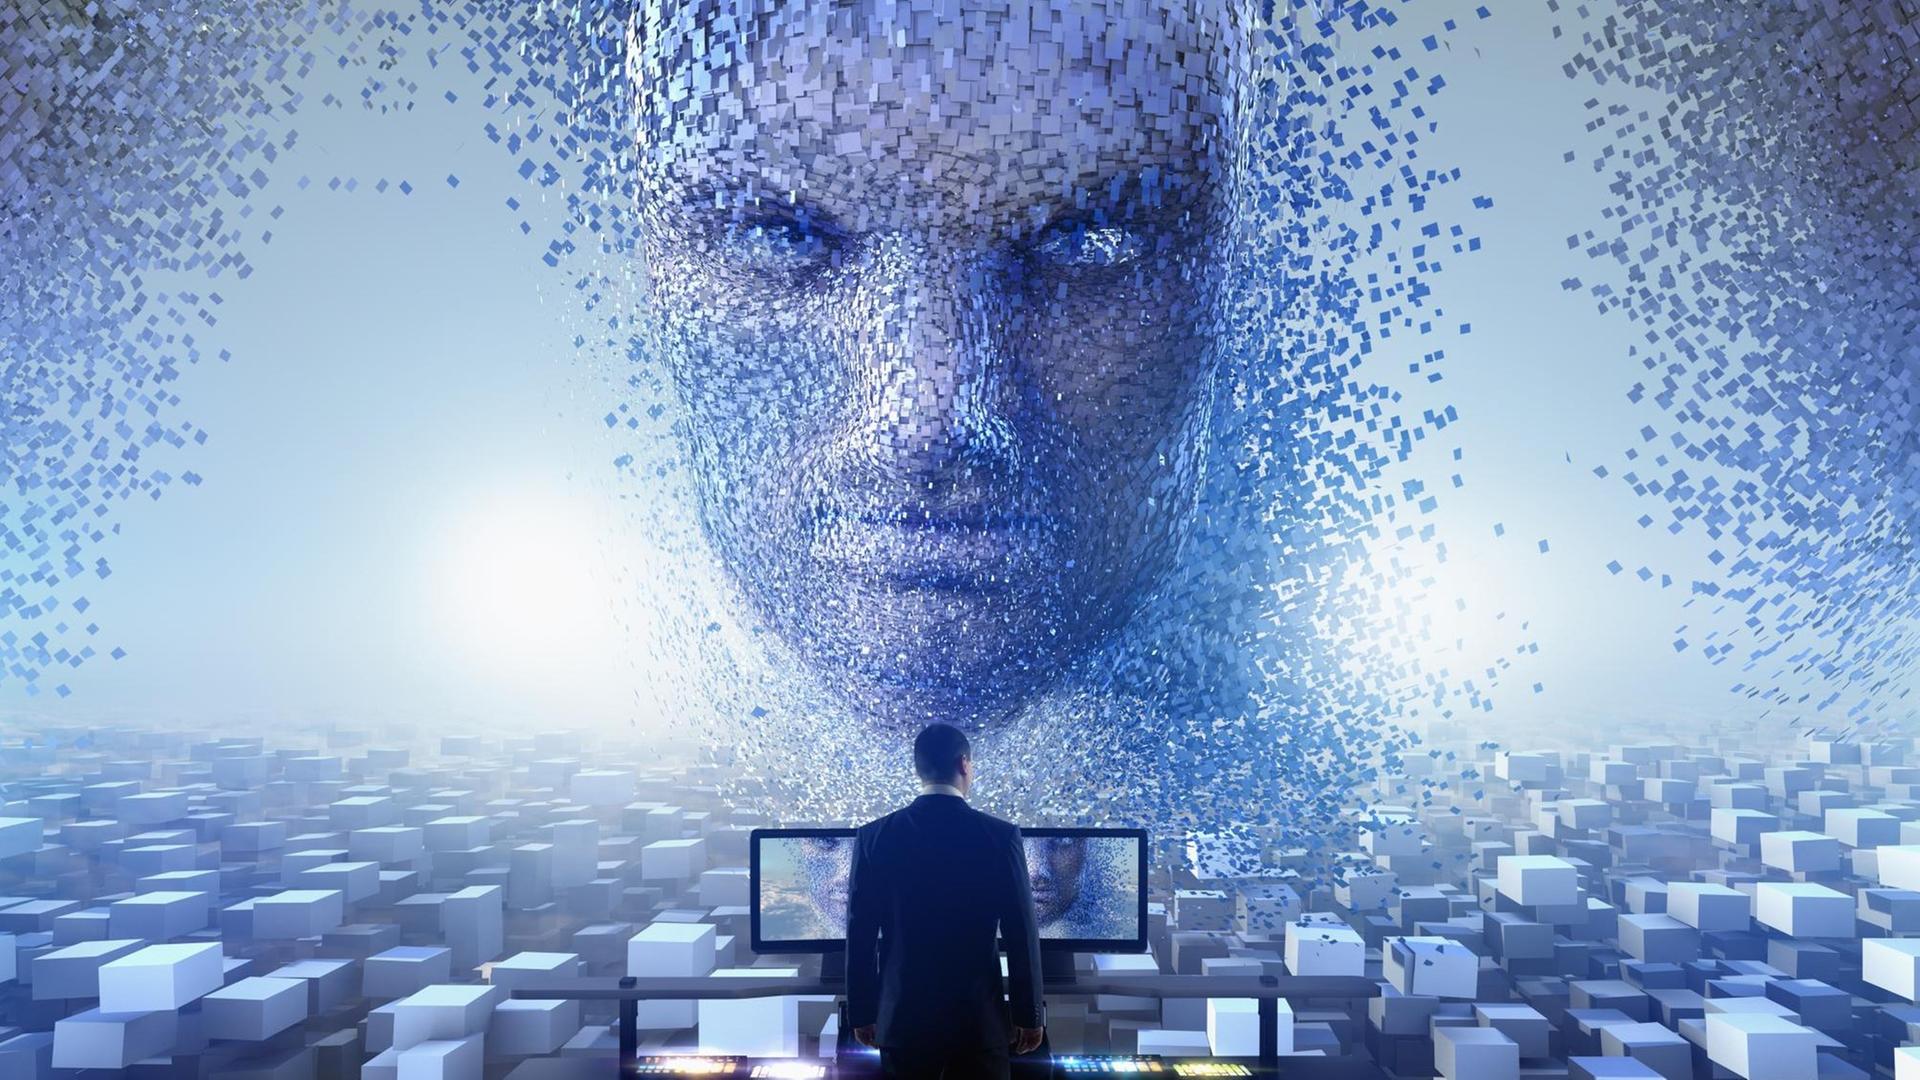 In einer Computeranimation fliegt ein böse aussehendes Gesicht, welches sich in Fetzen auflöst, auf einen Mann, der vor mehreren Bildschirmen steht, zu.